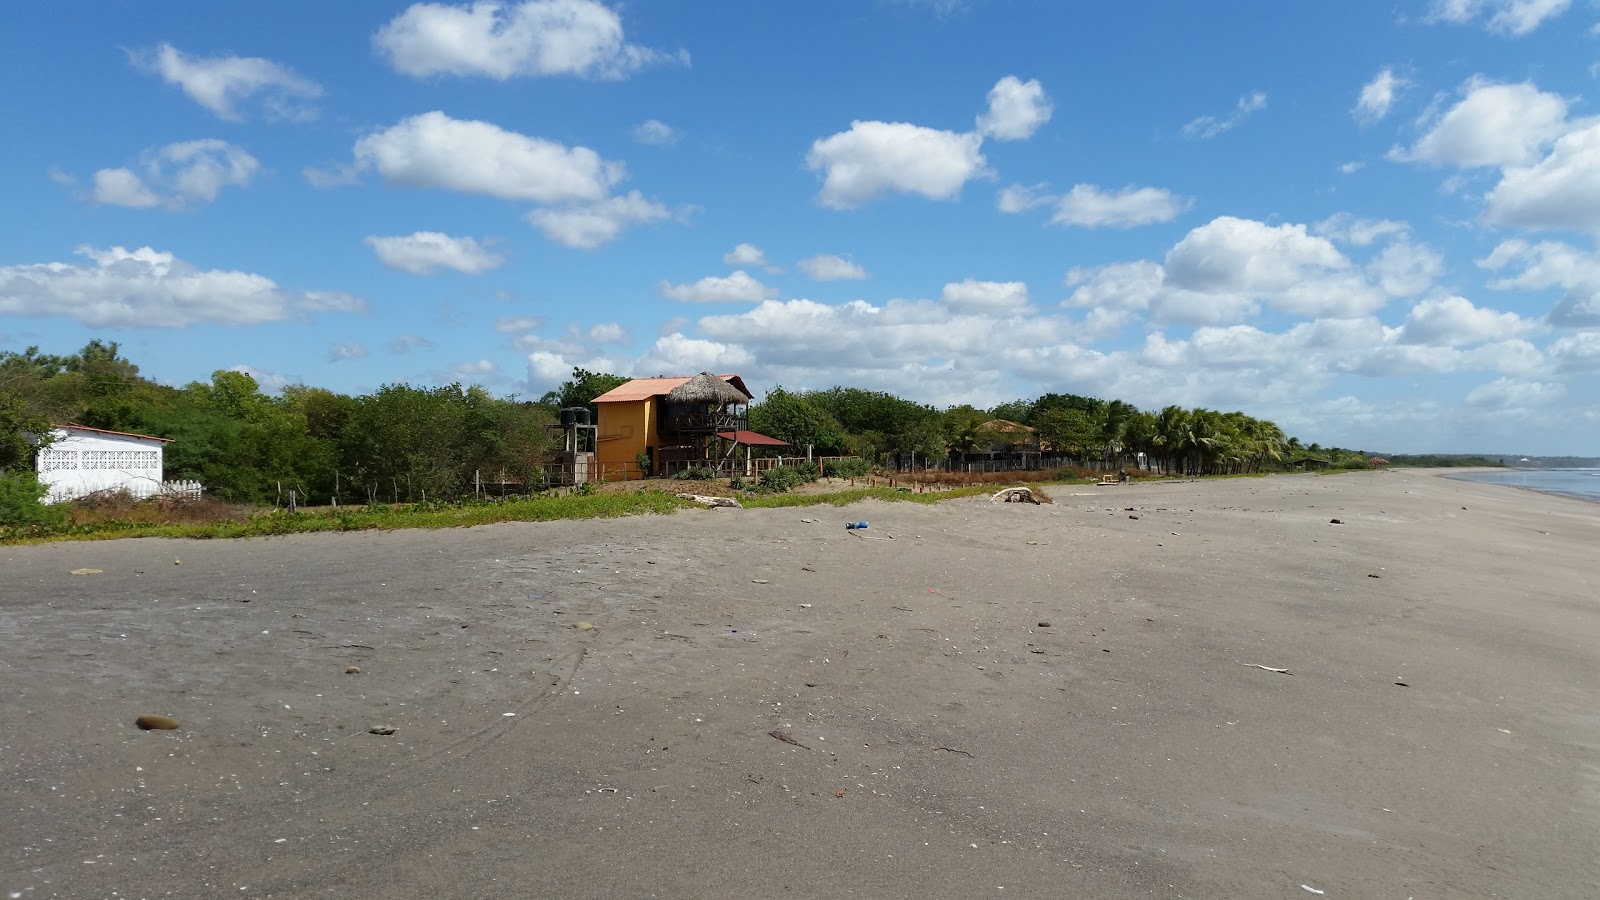 Zdjęcie Quizala beach obszar udogodnień